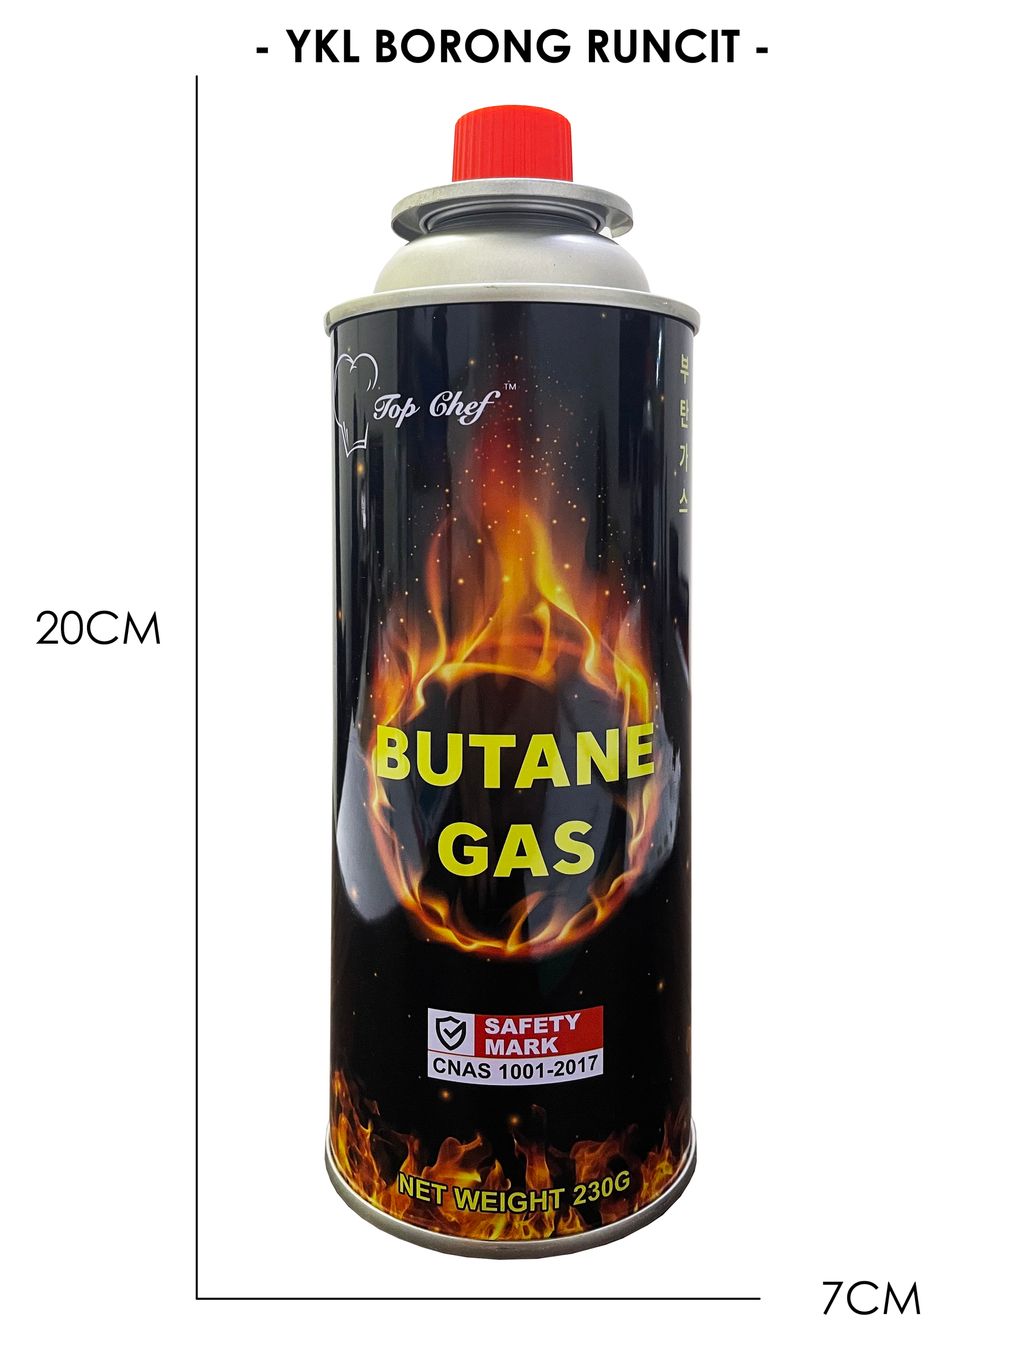 BUTANE GAS (DIMENSION)